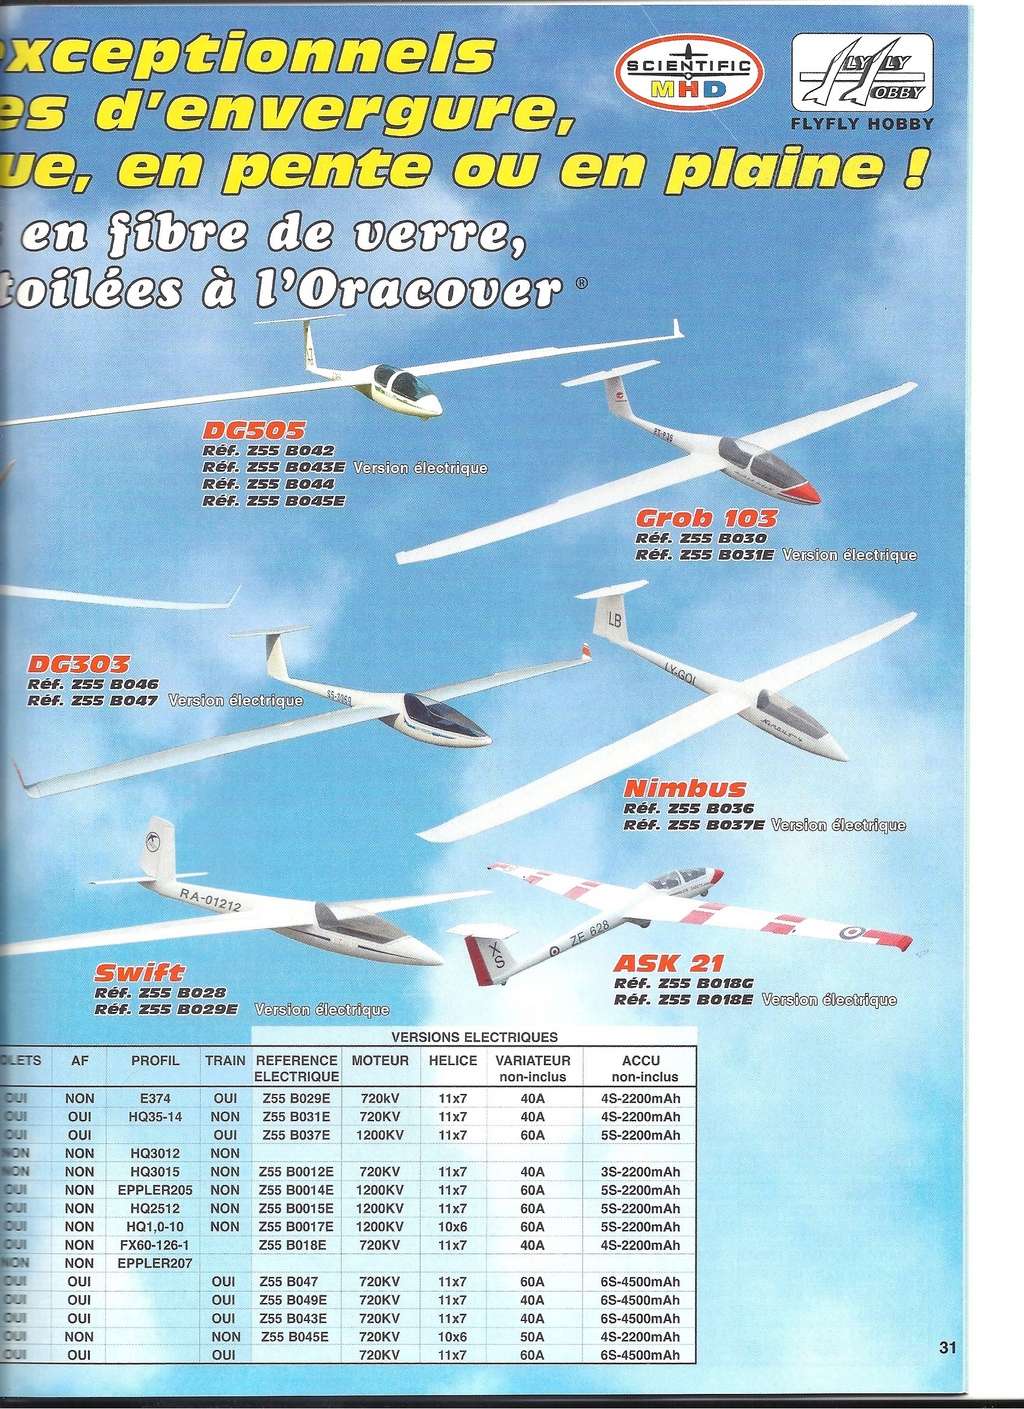 [SCIENTIFIC MHD 2015] Catalogue avions, hélicos, drones et bateaux RC 2015  Scien188